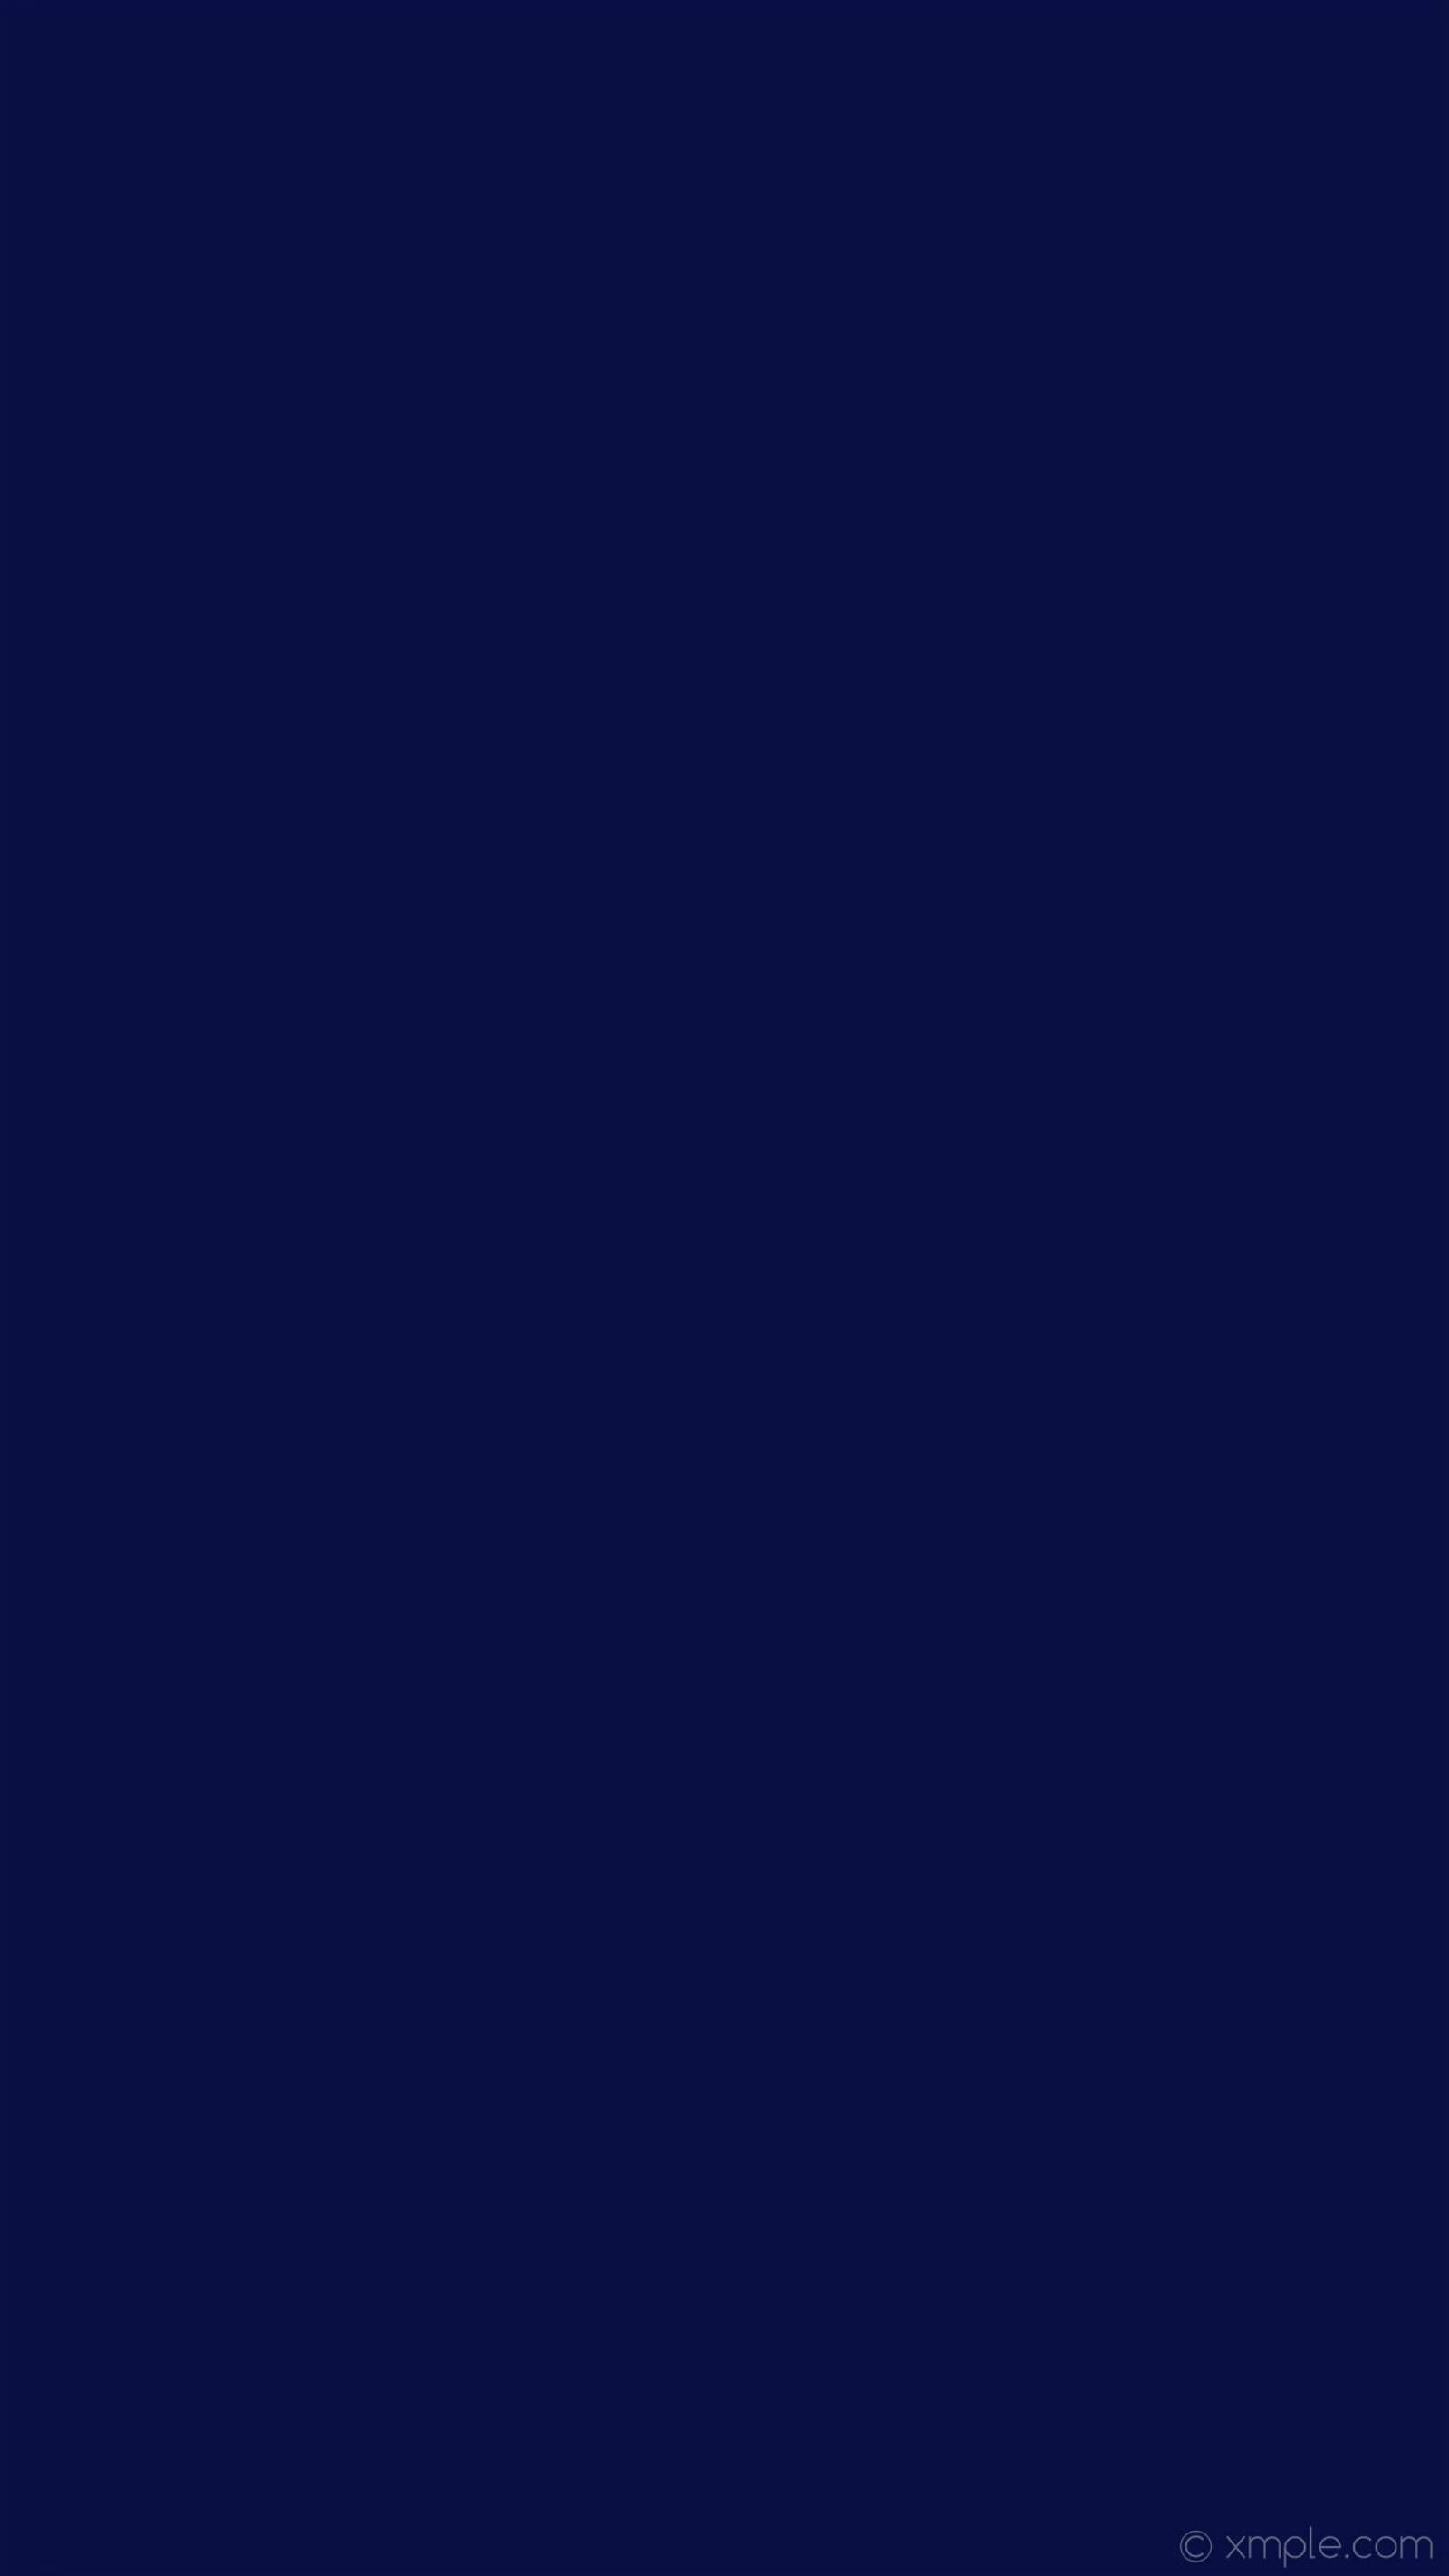 Solid Blue Wallpapers - Top Những Hình Ảnh Đẹp